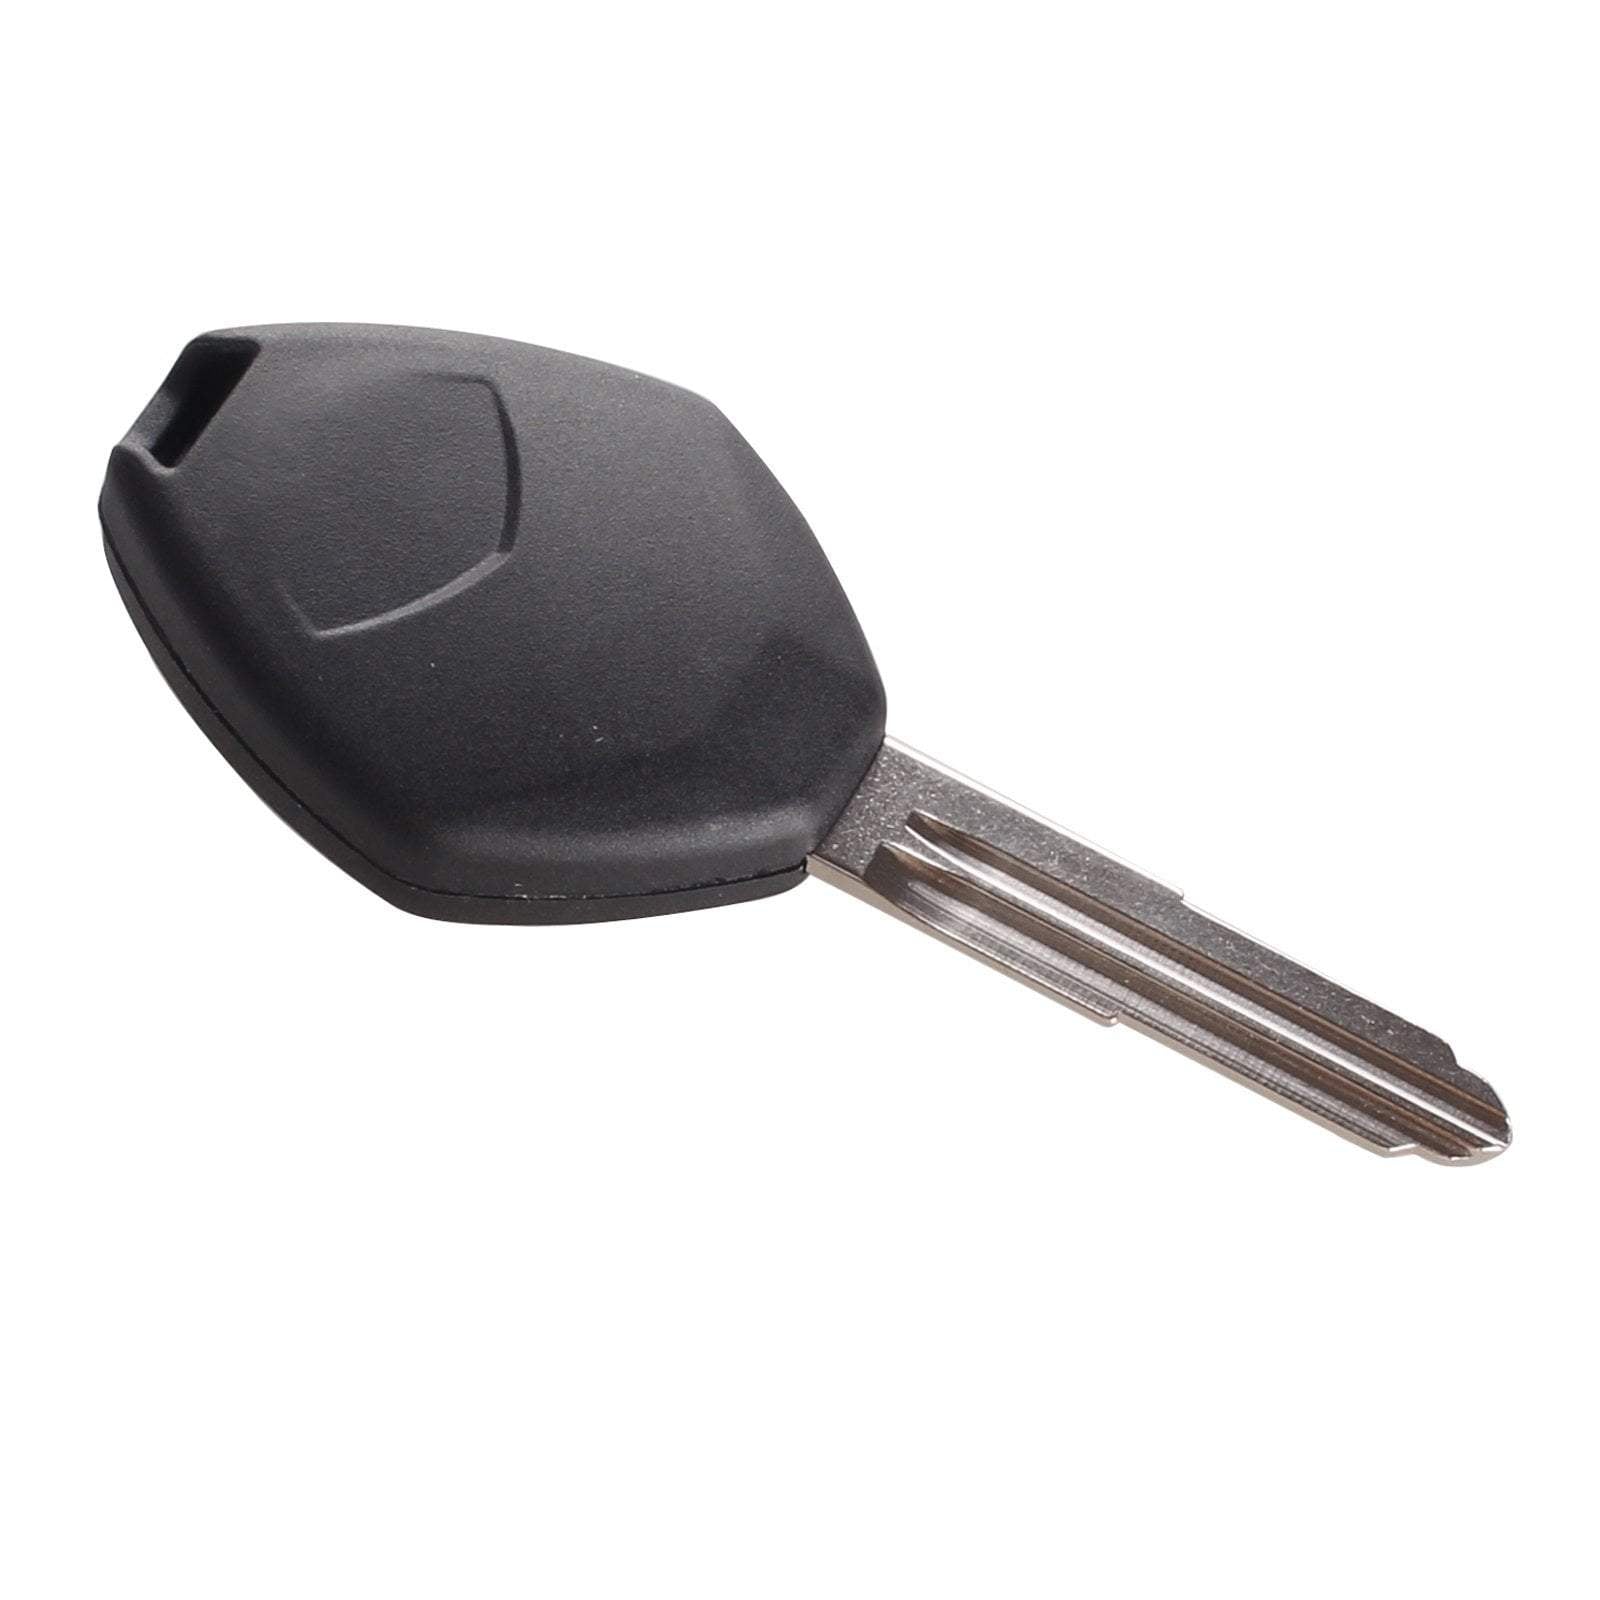 Fekete színű, 3 gombos Mitsubishi kulcs, kulcsház hátulja